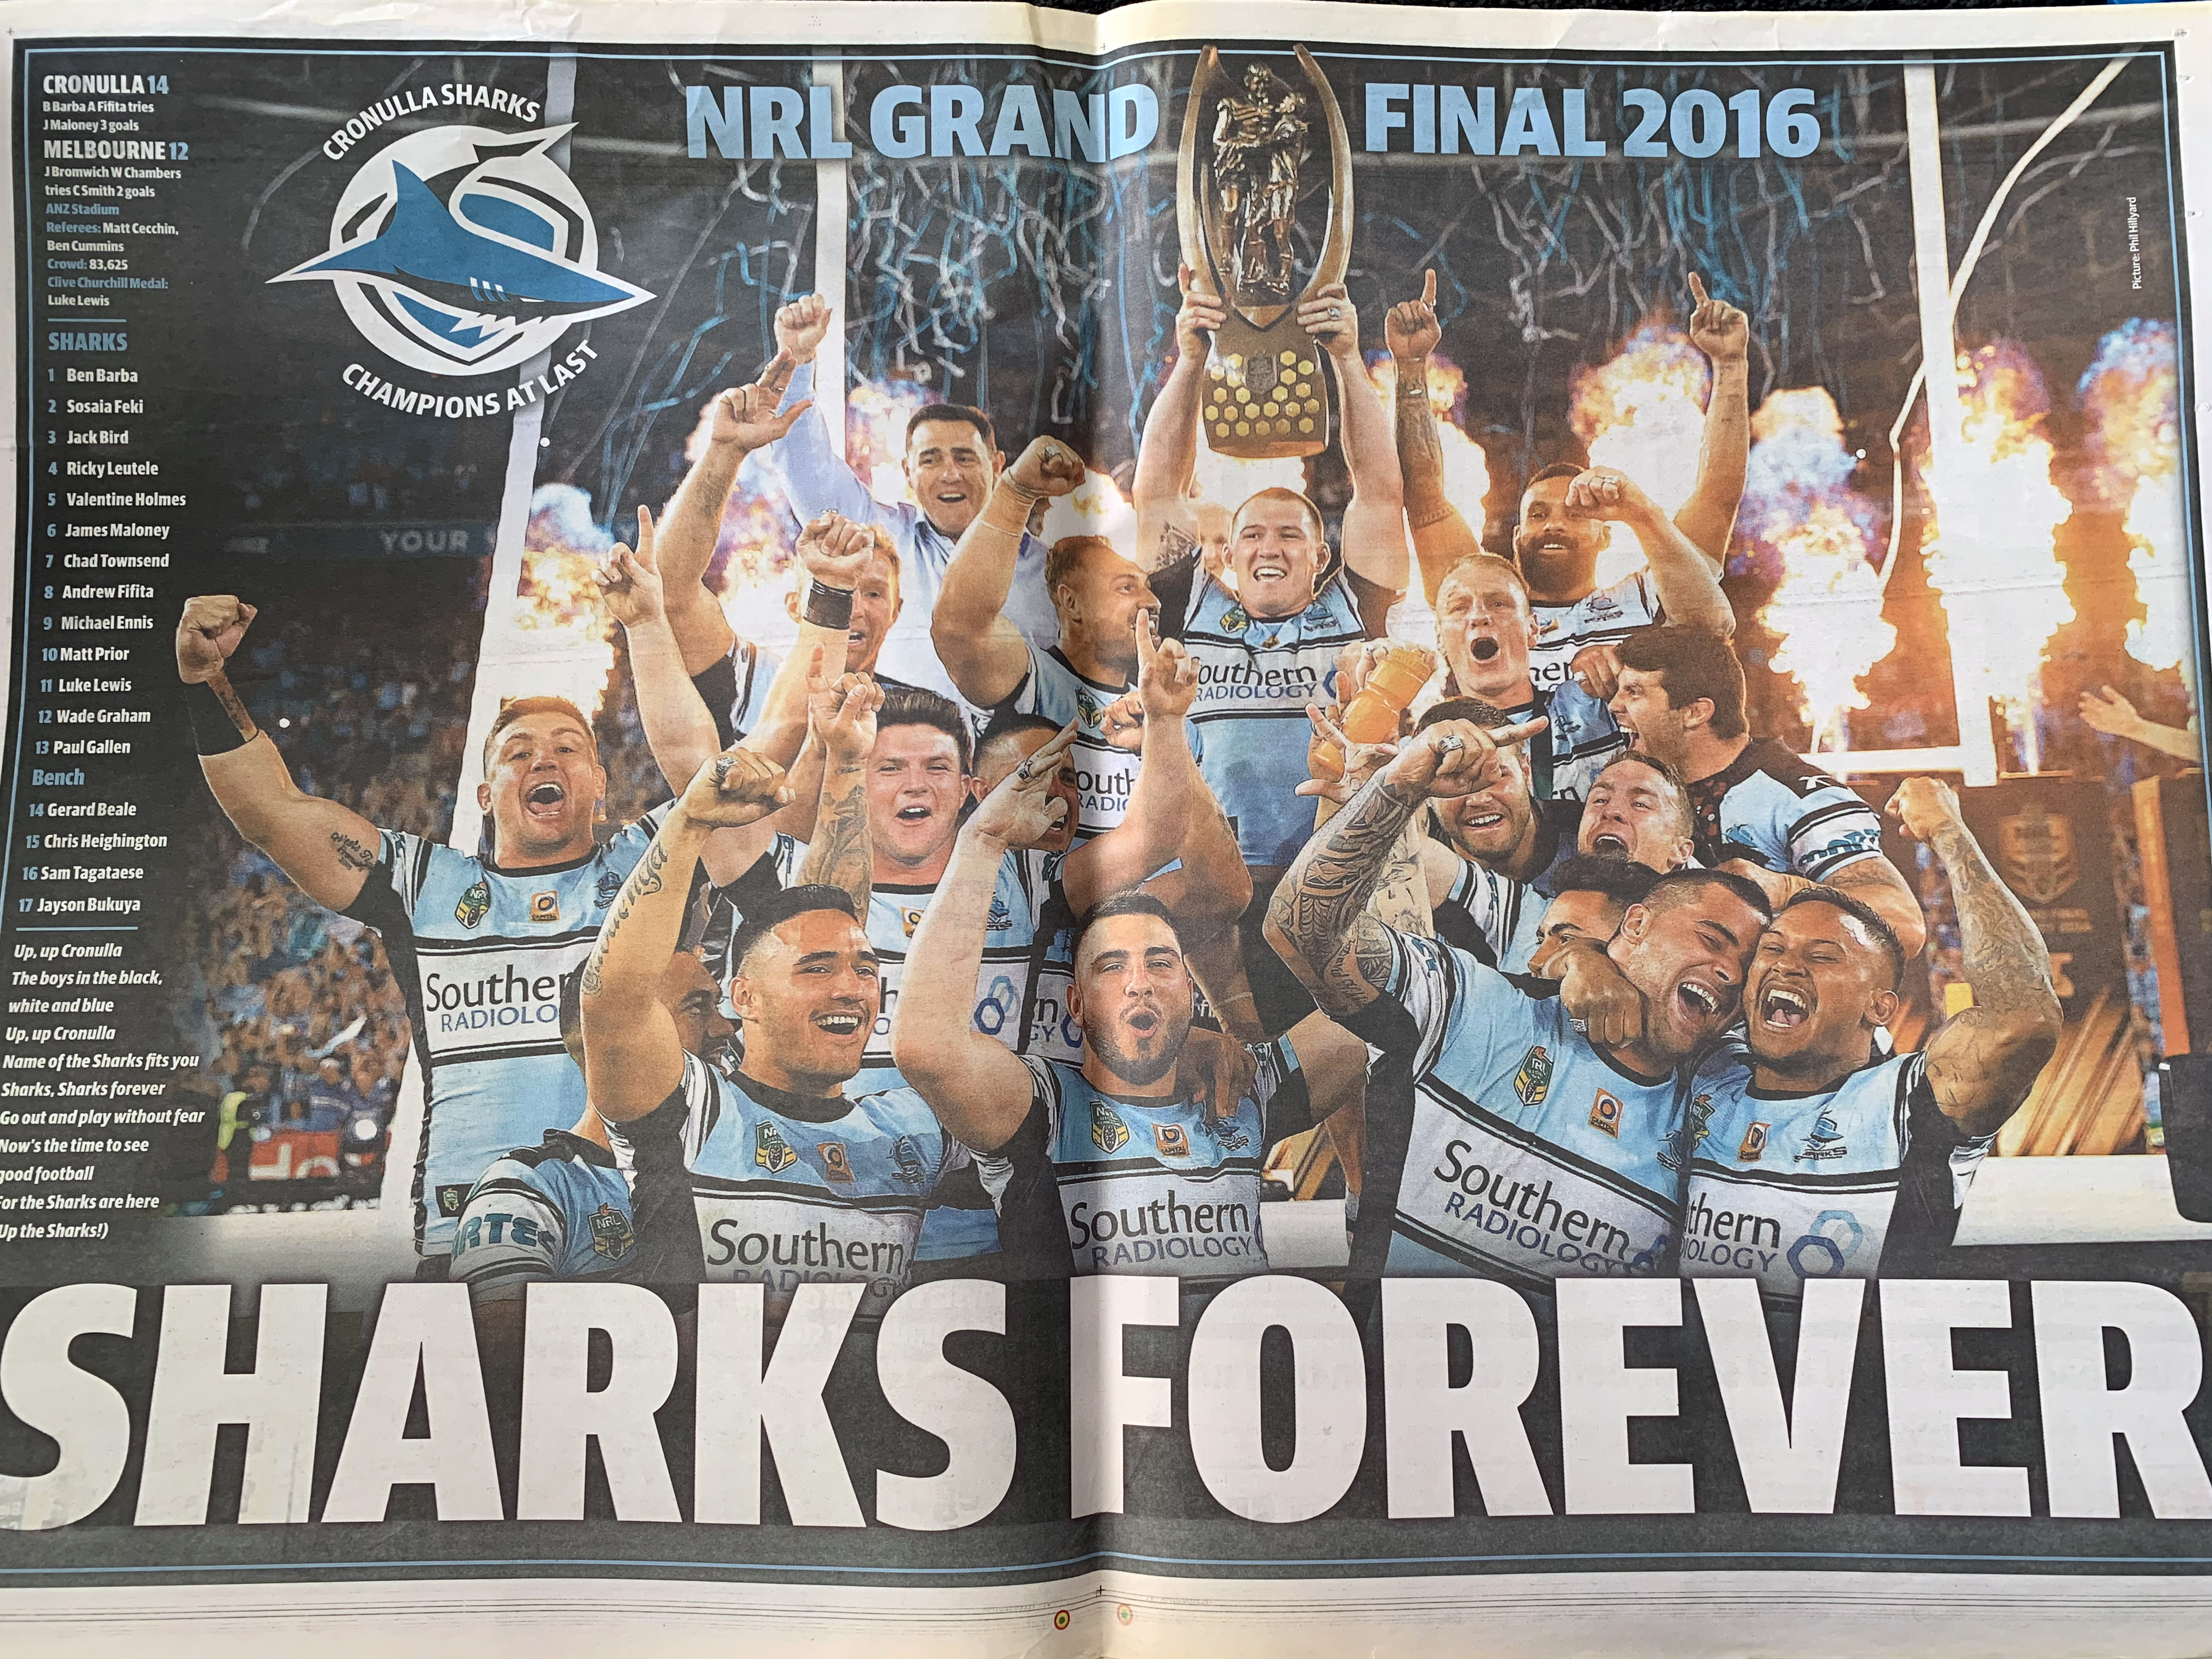 Sharks Forever - Daily Telegraph